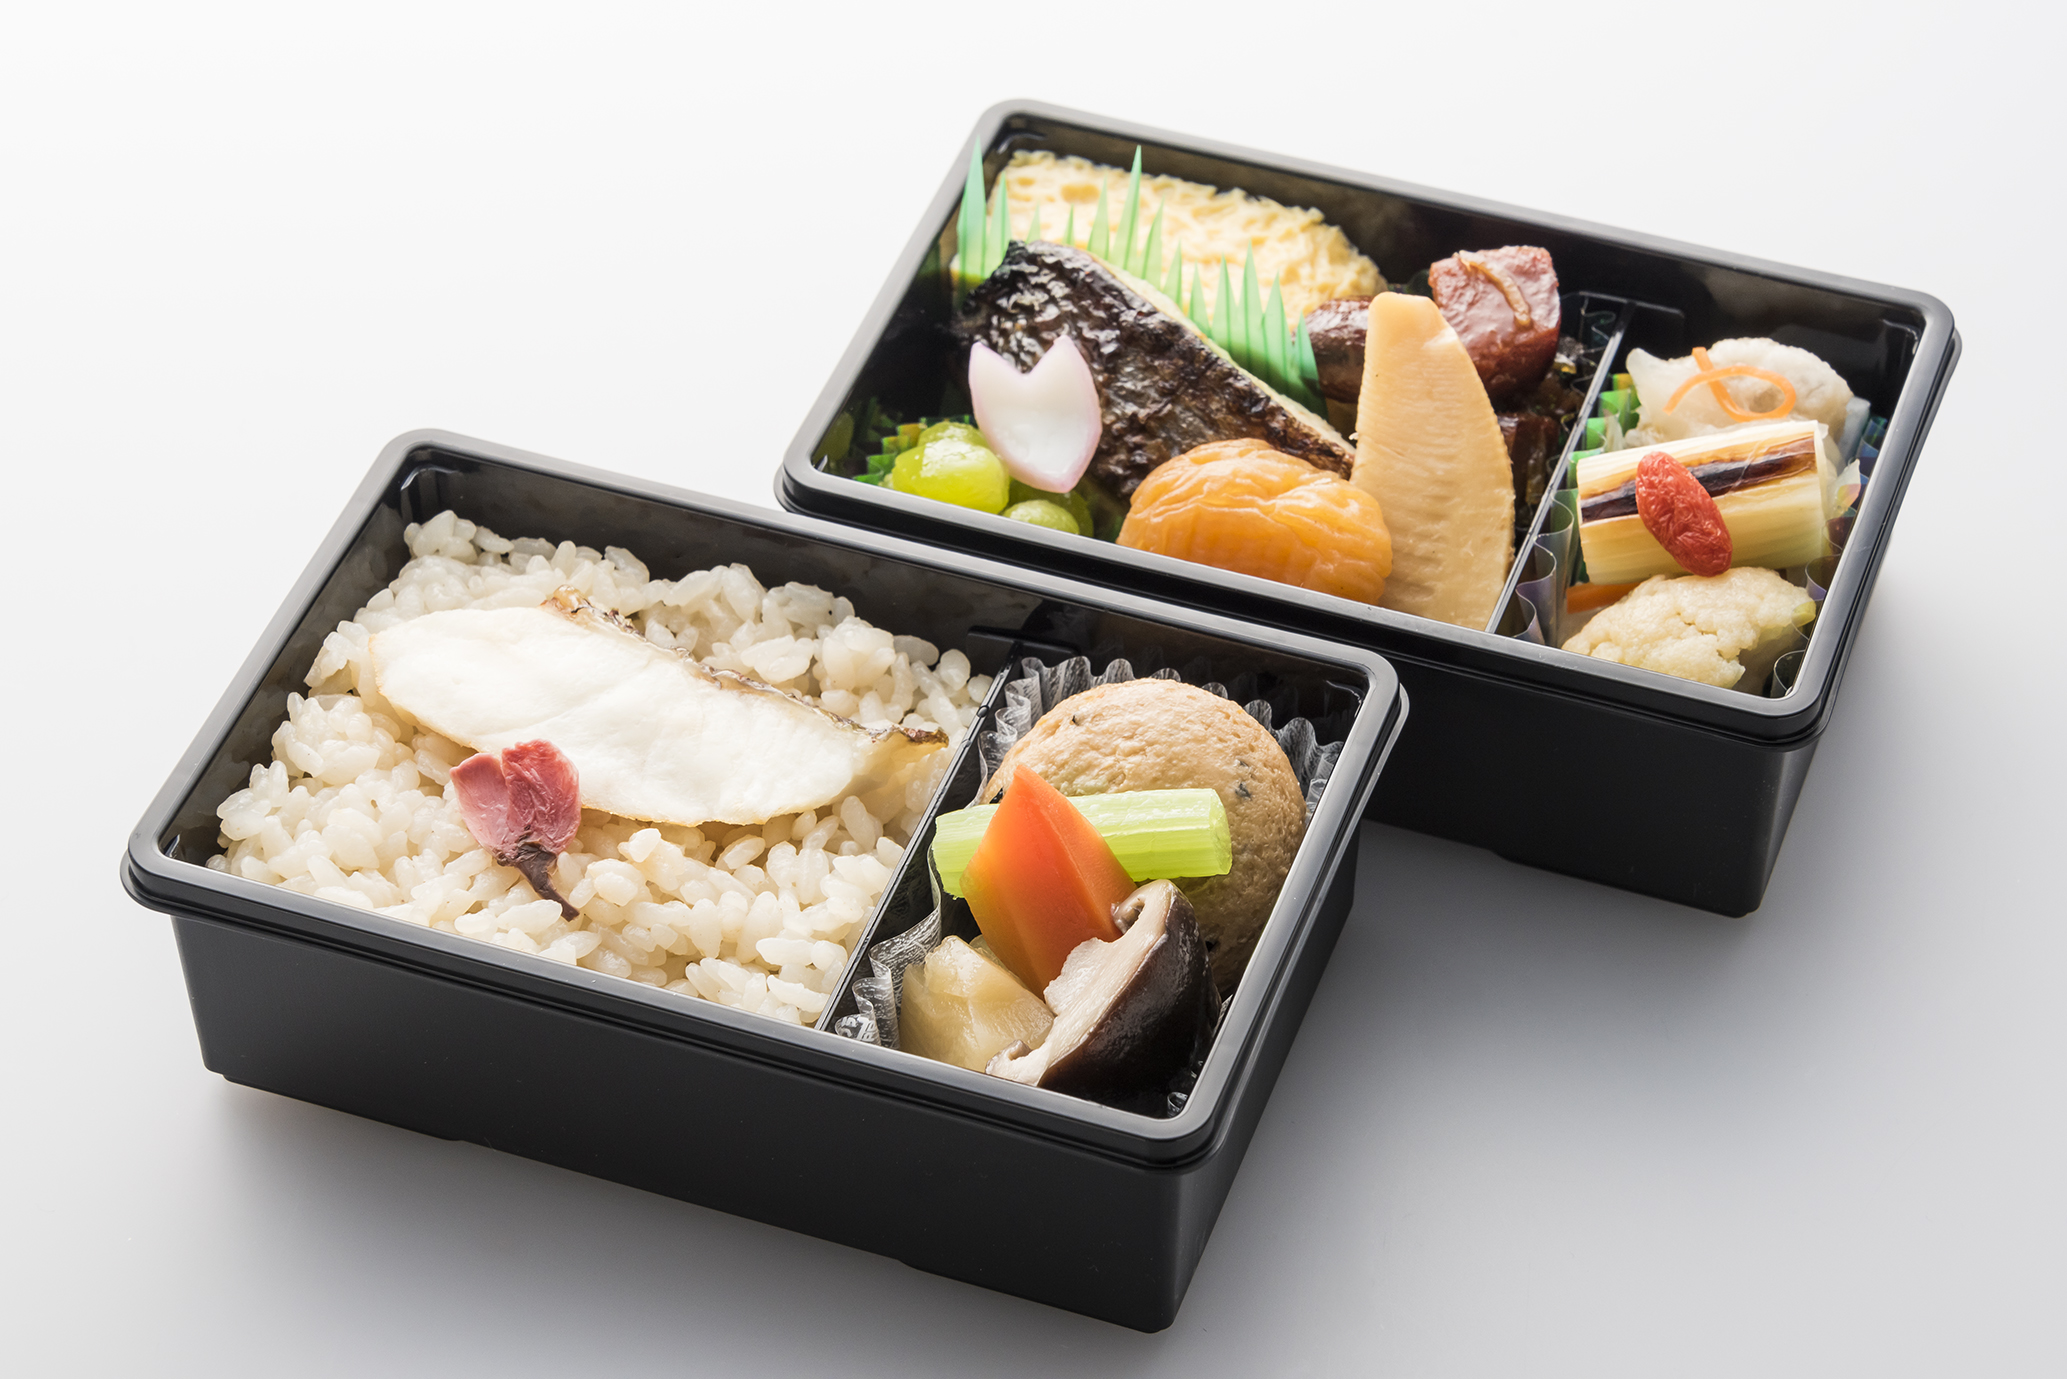 画像 Ana 国内線プレミアムクラスの食事 Premium Gozen Premium Sabo のコラボレーションパートナーを変更 プレミアムクラス 普通席に期間限定のドリンクも登場 3月 5月実施 2 6 トラベル Watch